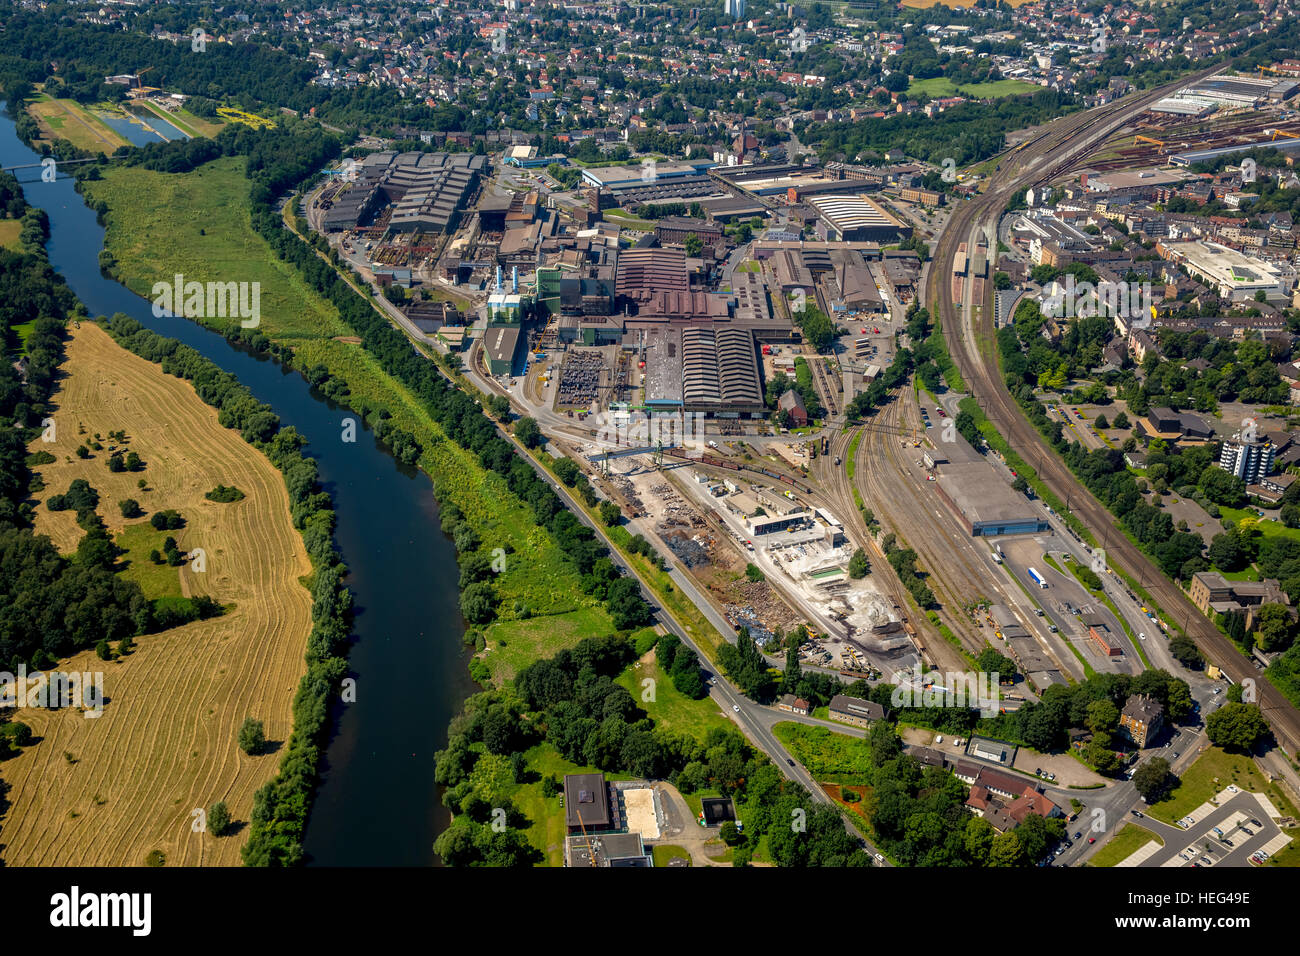 Vista aérea, distrito industrial, Alemán Edelstahlwerke GmbH, acerías, Valle de Ruhr, Witten, Renania del Norte-Westfalia, Alemania Foto de stock